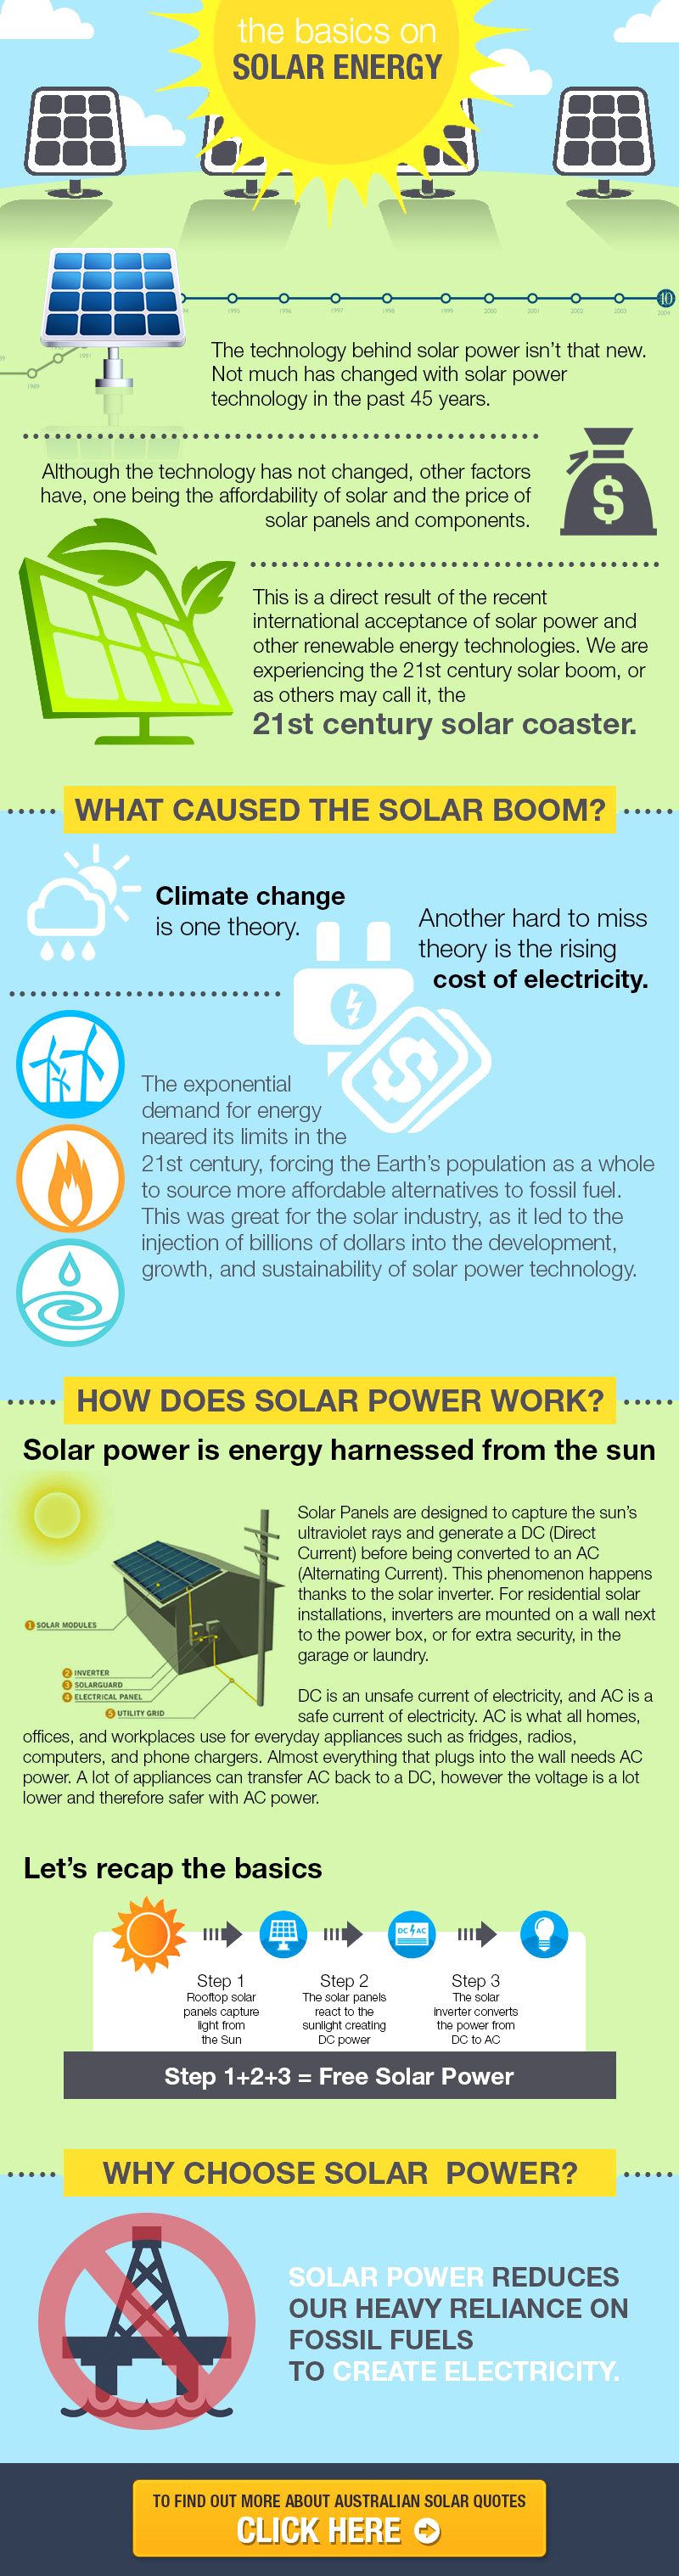 solar energy infographic ksa twitter